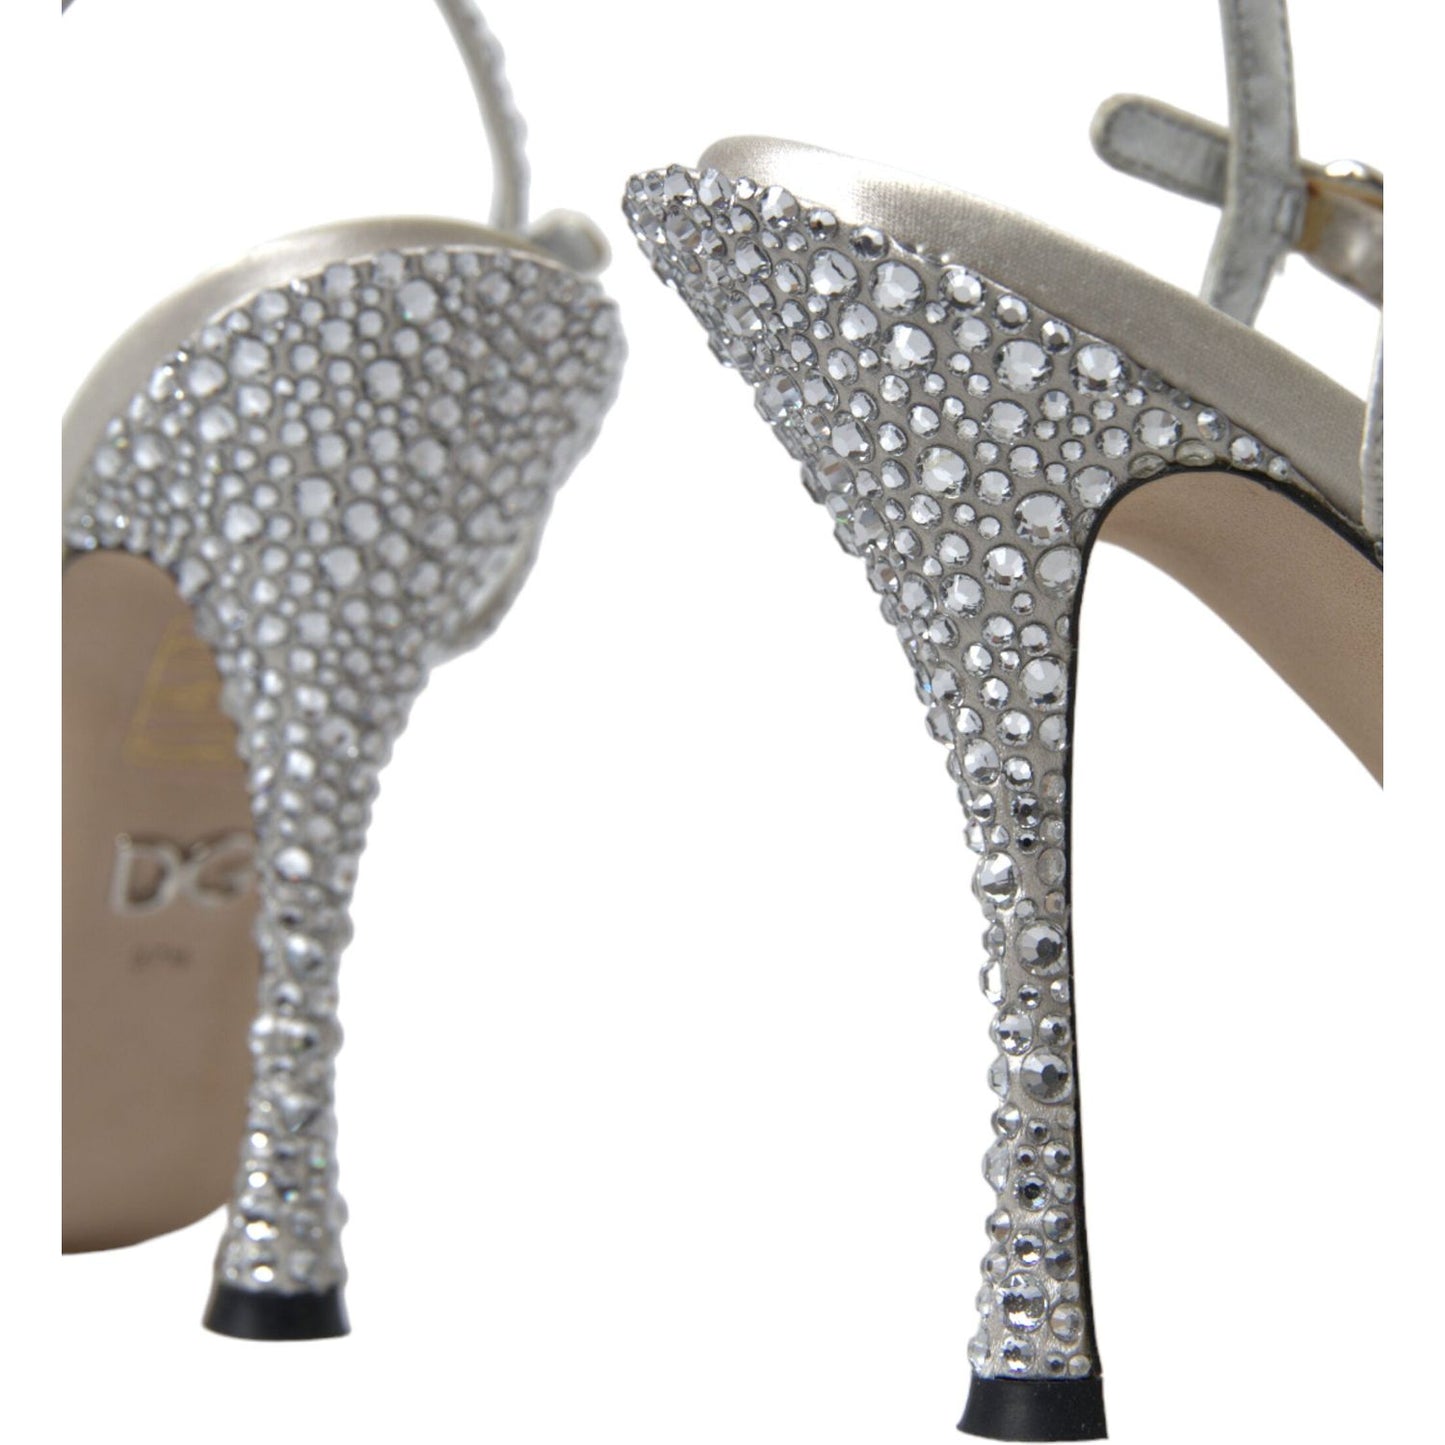 Dolce & Gabbana Elegant Crystal Embellished Heels Sandals silver-crystal-ankle-strap-sandals-shoes-1